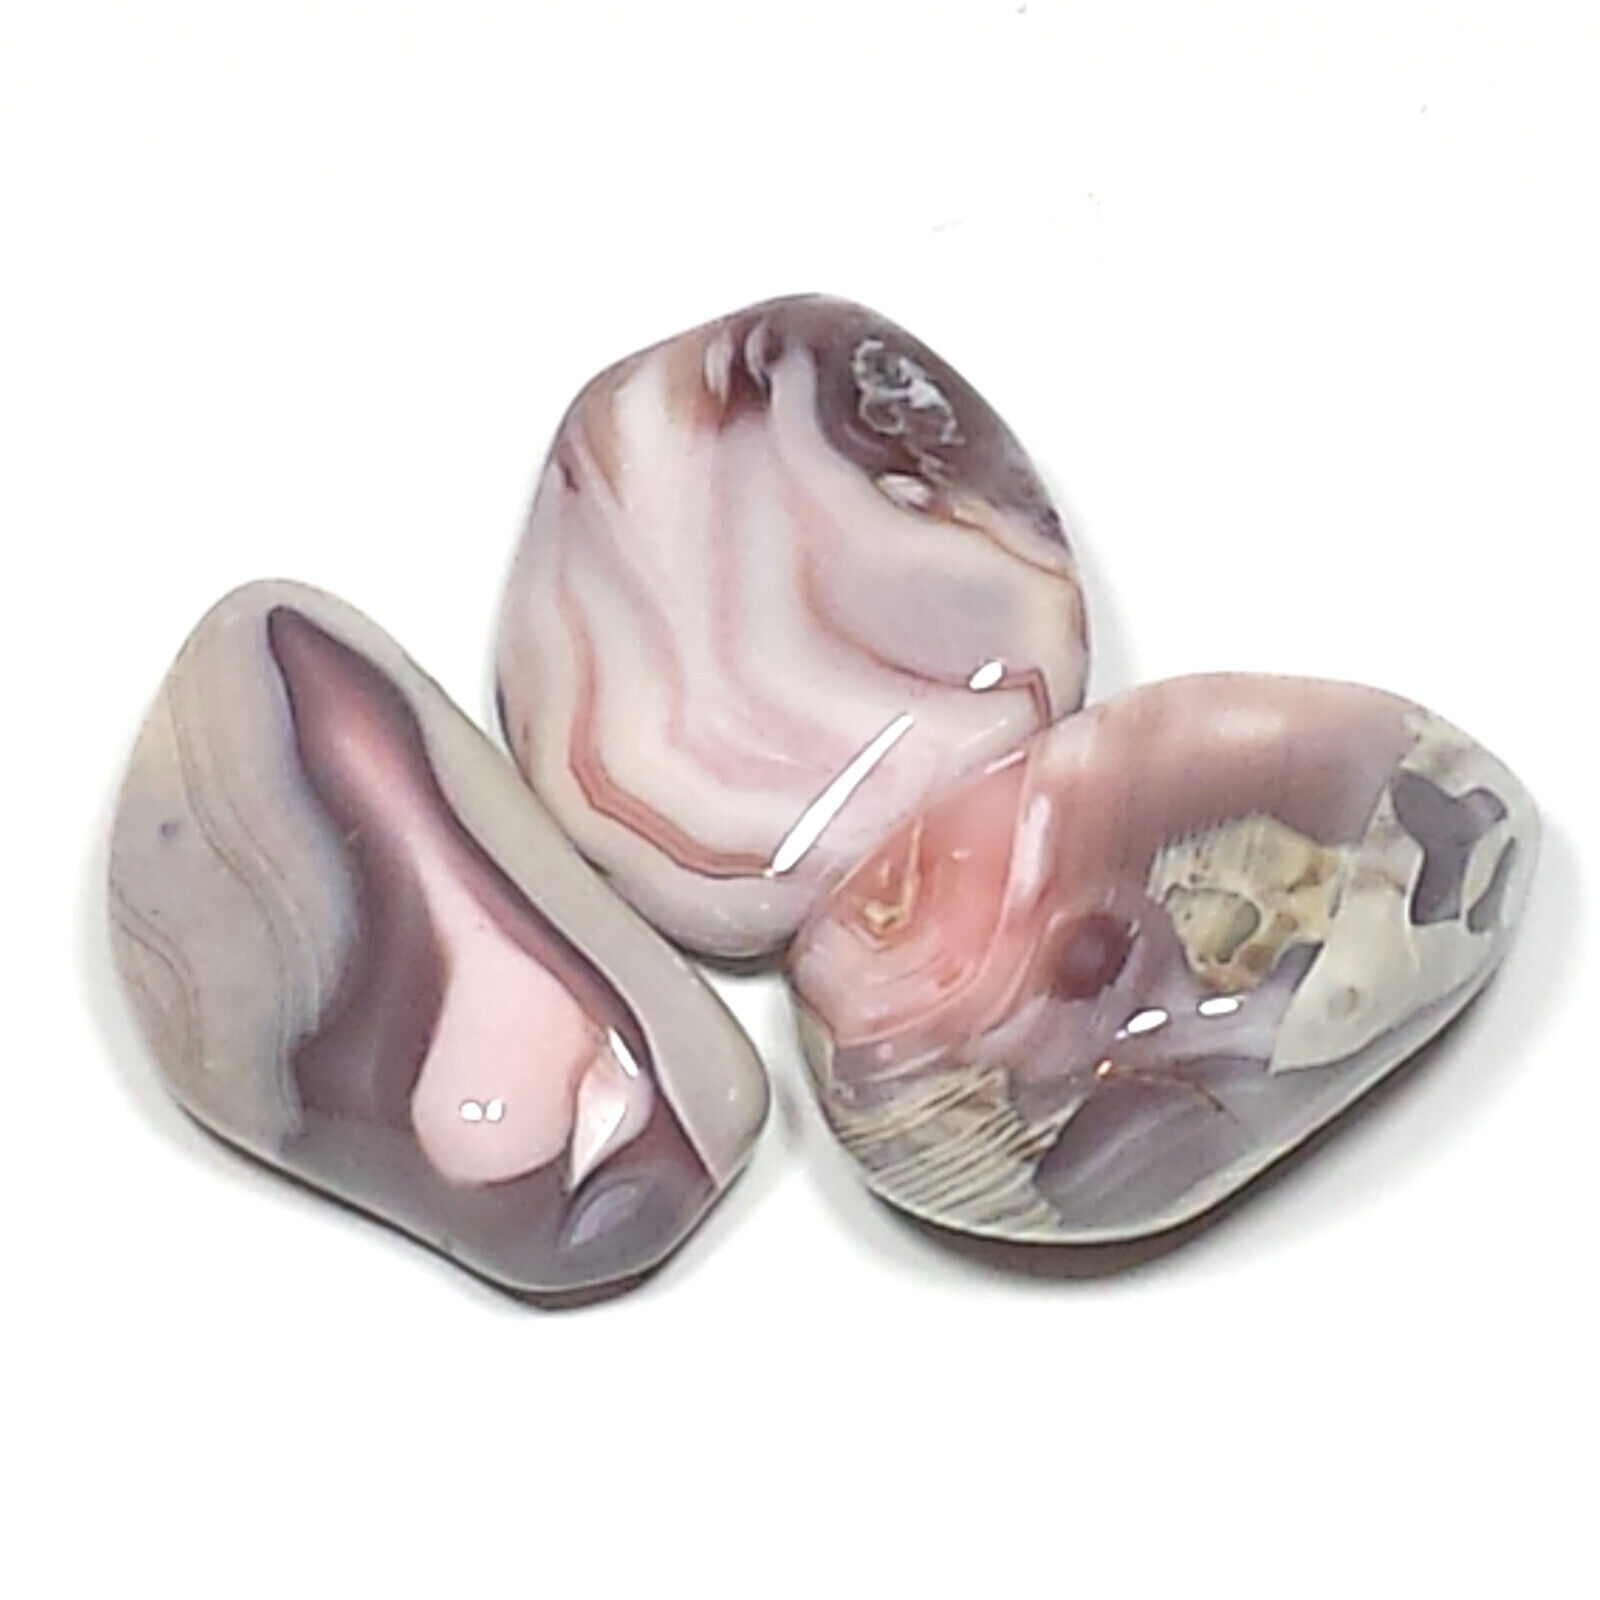 Pink Botswana Agate Tumbled Polished Crystal Stone, 3 Pc Set, Avg Size 1.0 Inch